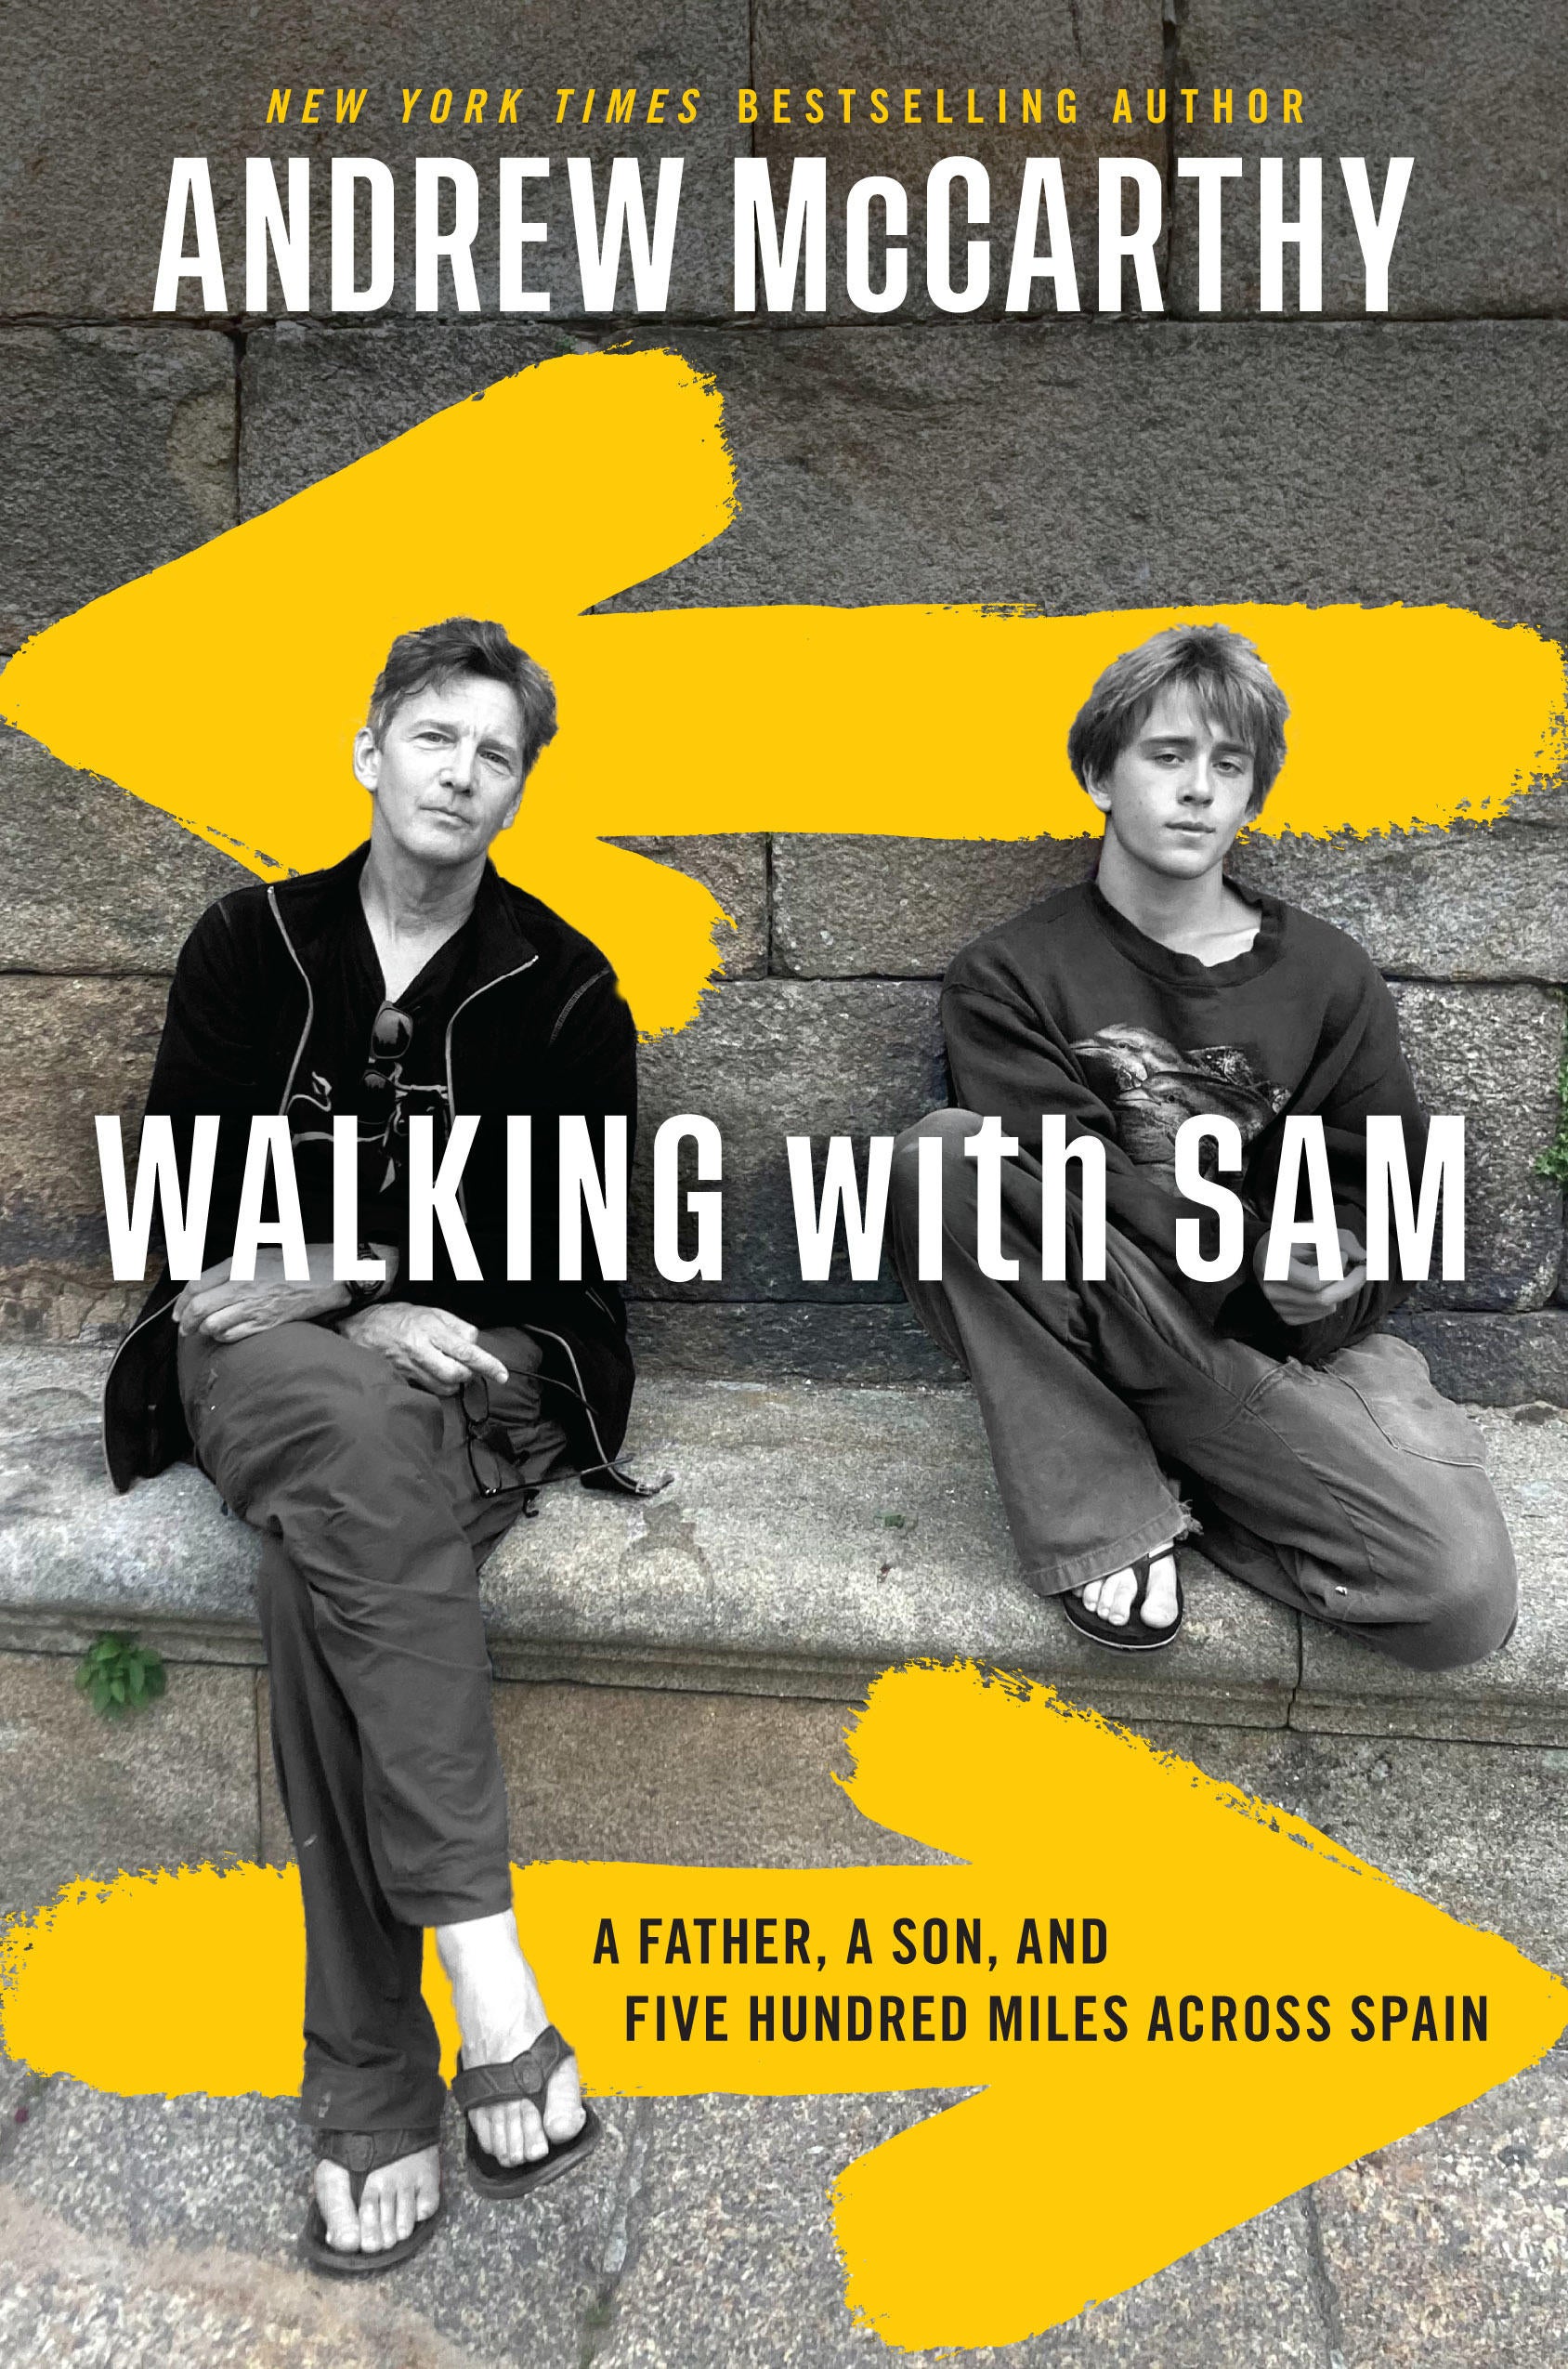 mccarthy-walkingwithsam-book-cover.jpg